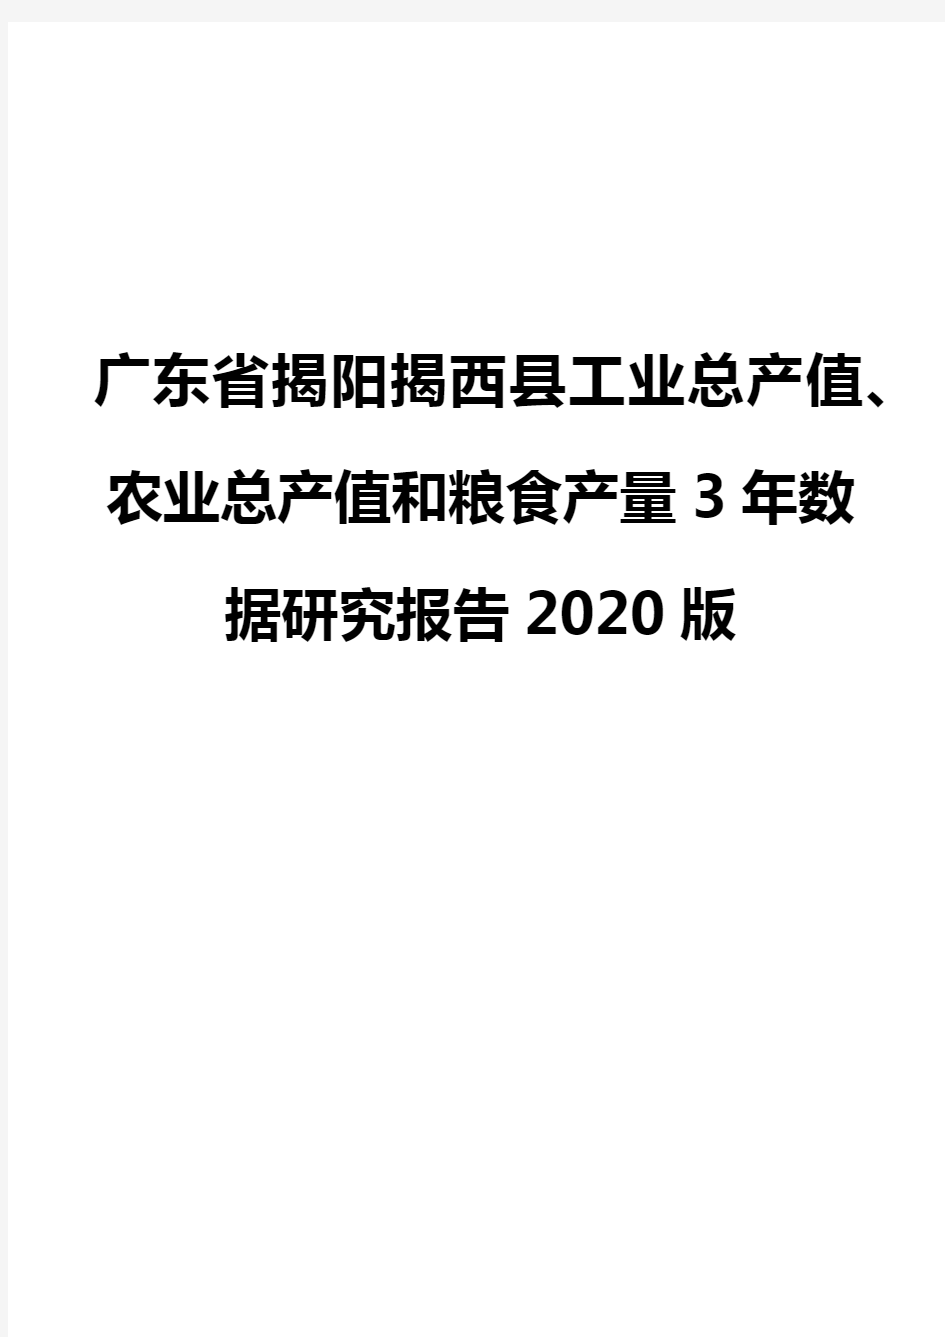 广东省揭阳揭西县工业总产值、农业总产值和粮食产量3年数据研究报告2020版